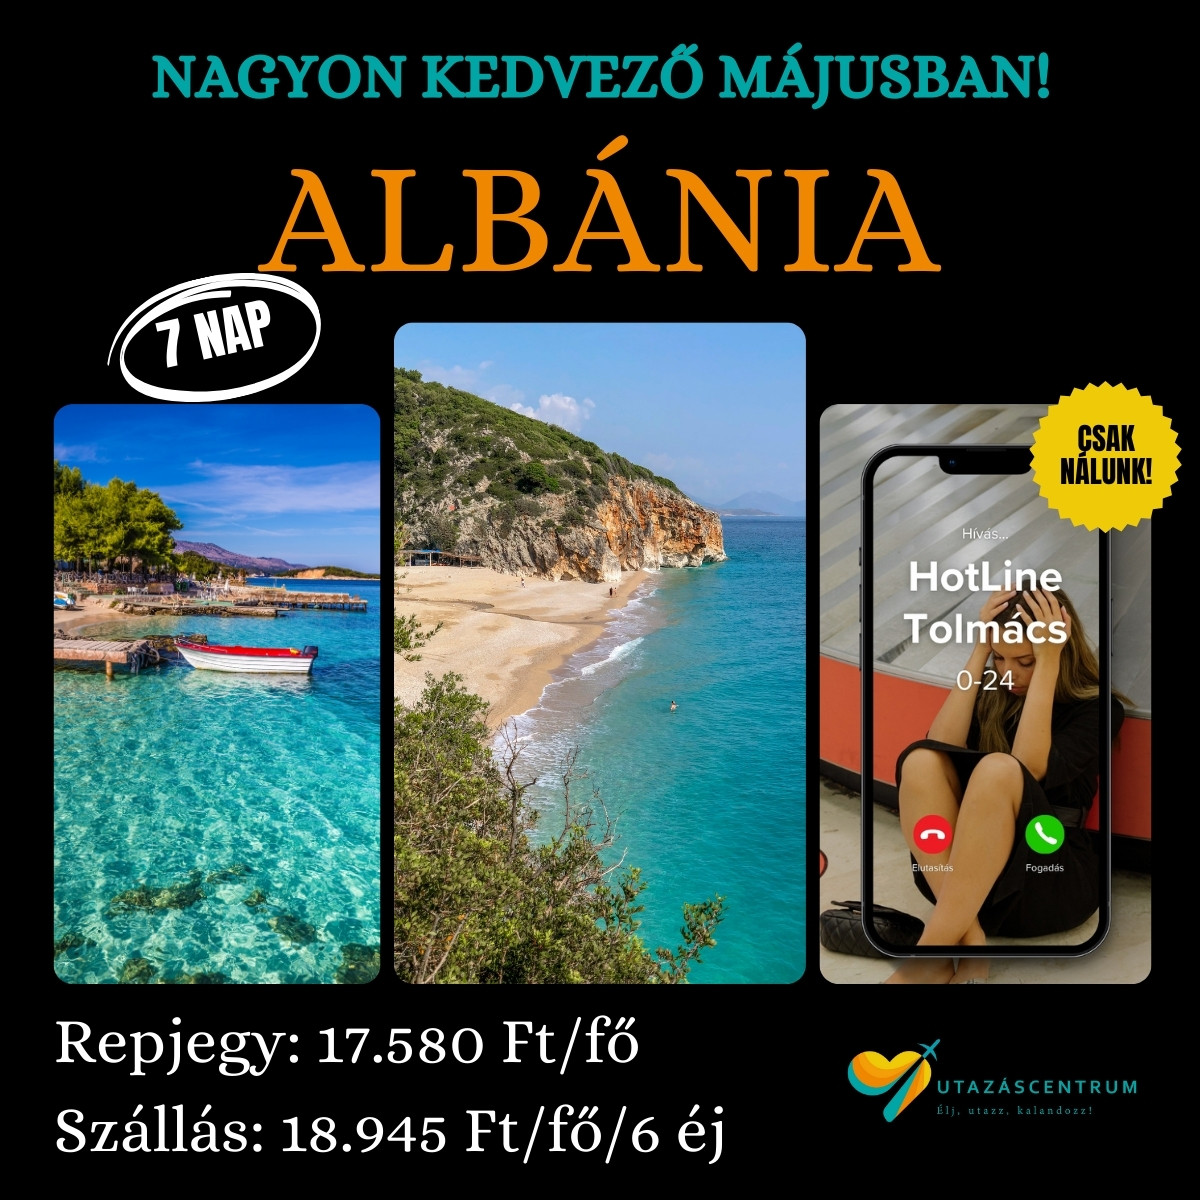 durres albánia utazás nyaralás városnézés városlátogatás programok látnivalók utazáscentrum blog